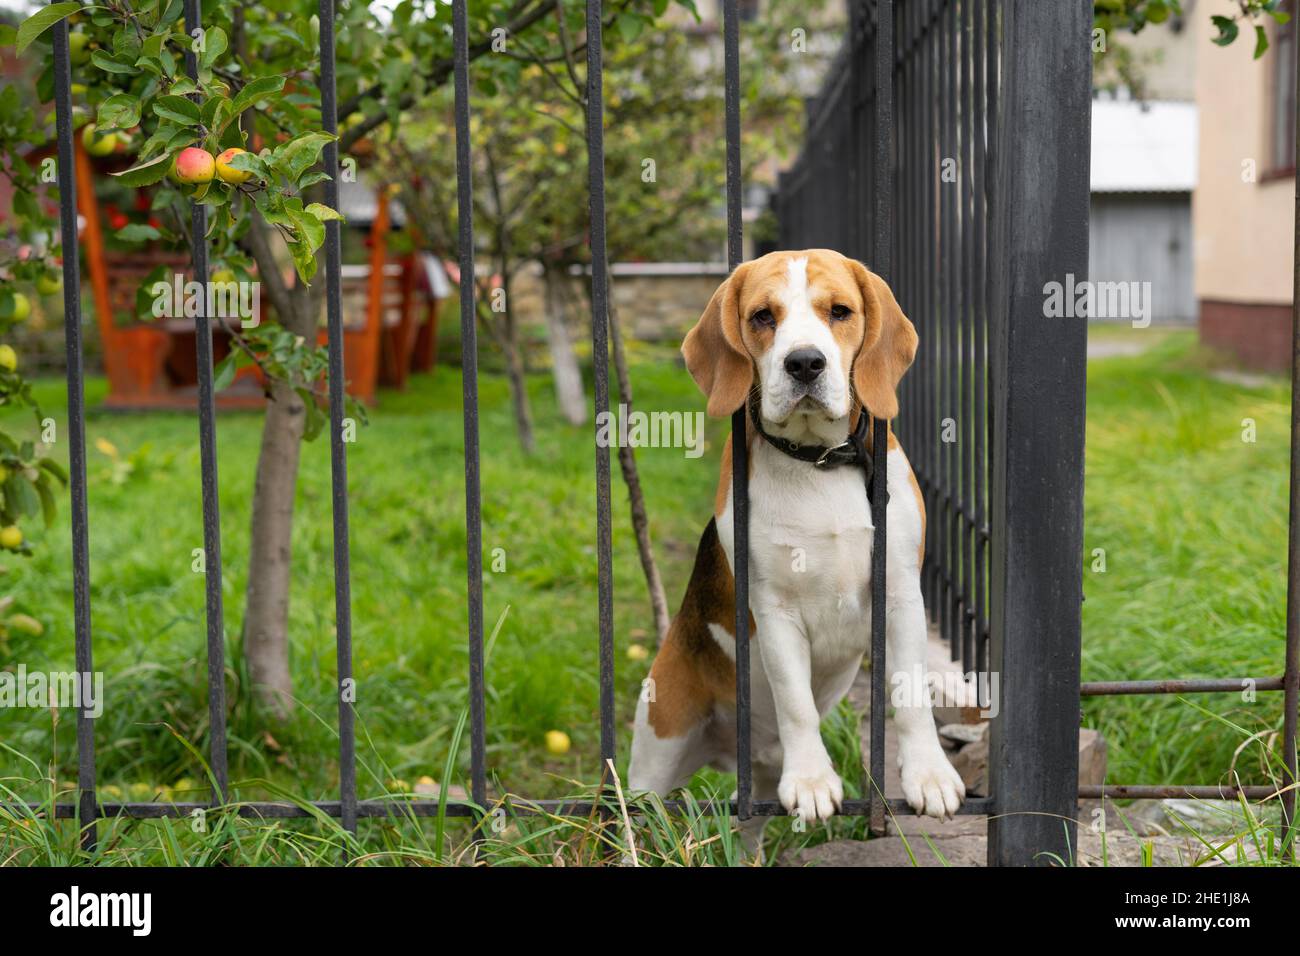 Ein Beagle-Hund bellt hinter einem geschmiedeten Metallzaun, der auf dem Gras sitzt. Stockfoto